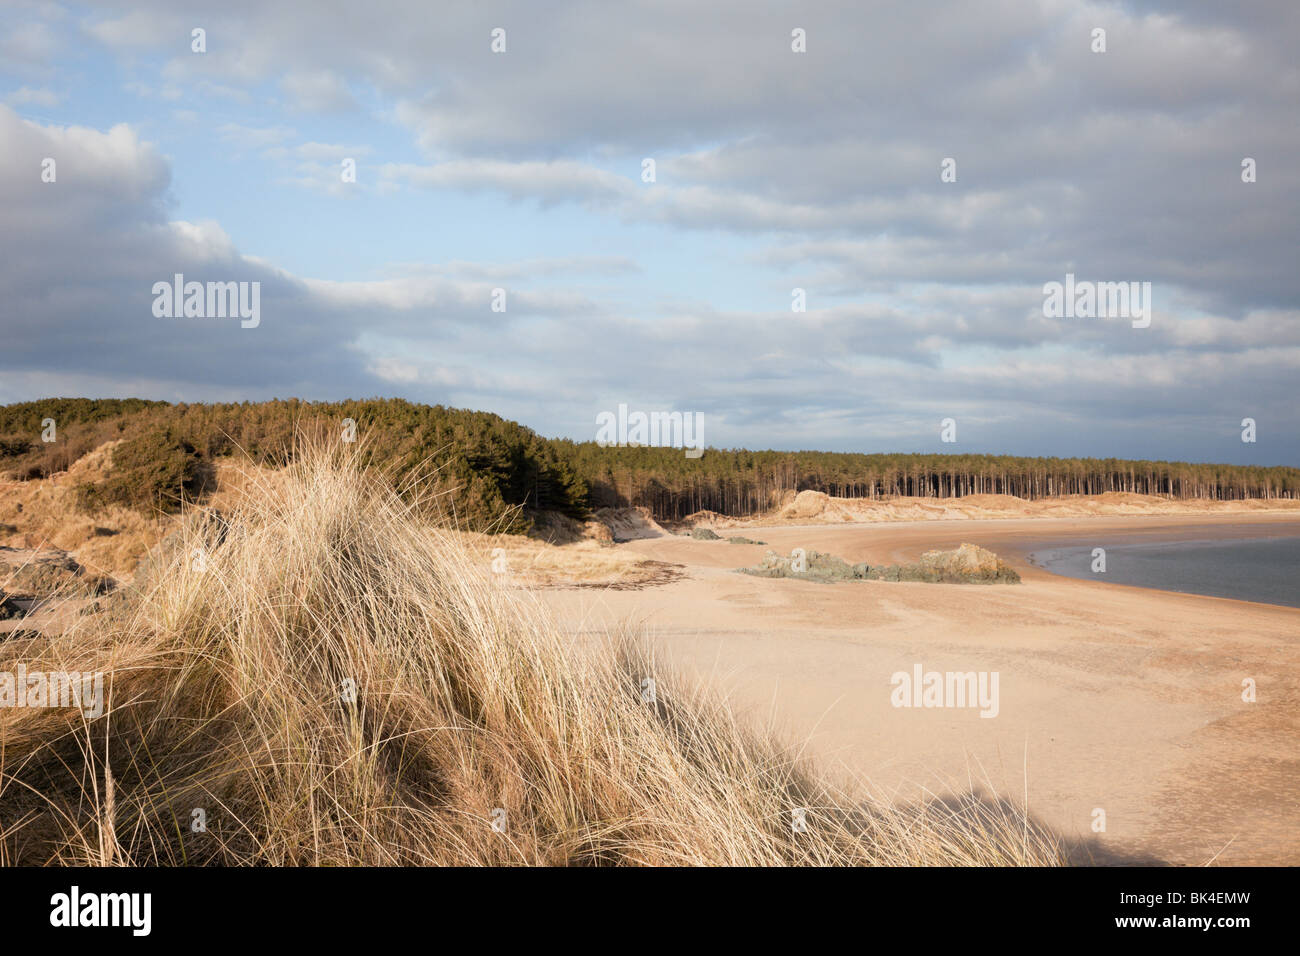 Vue de la forêt et de la plage de Newborough île Llanddwyn. Newborough, Isle of Anglesey, au nord du Pays de Galles, Royaume-Uni, Angleterre. Banque D'Images